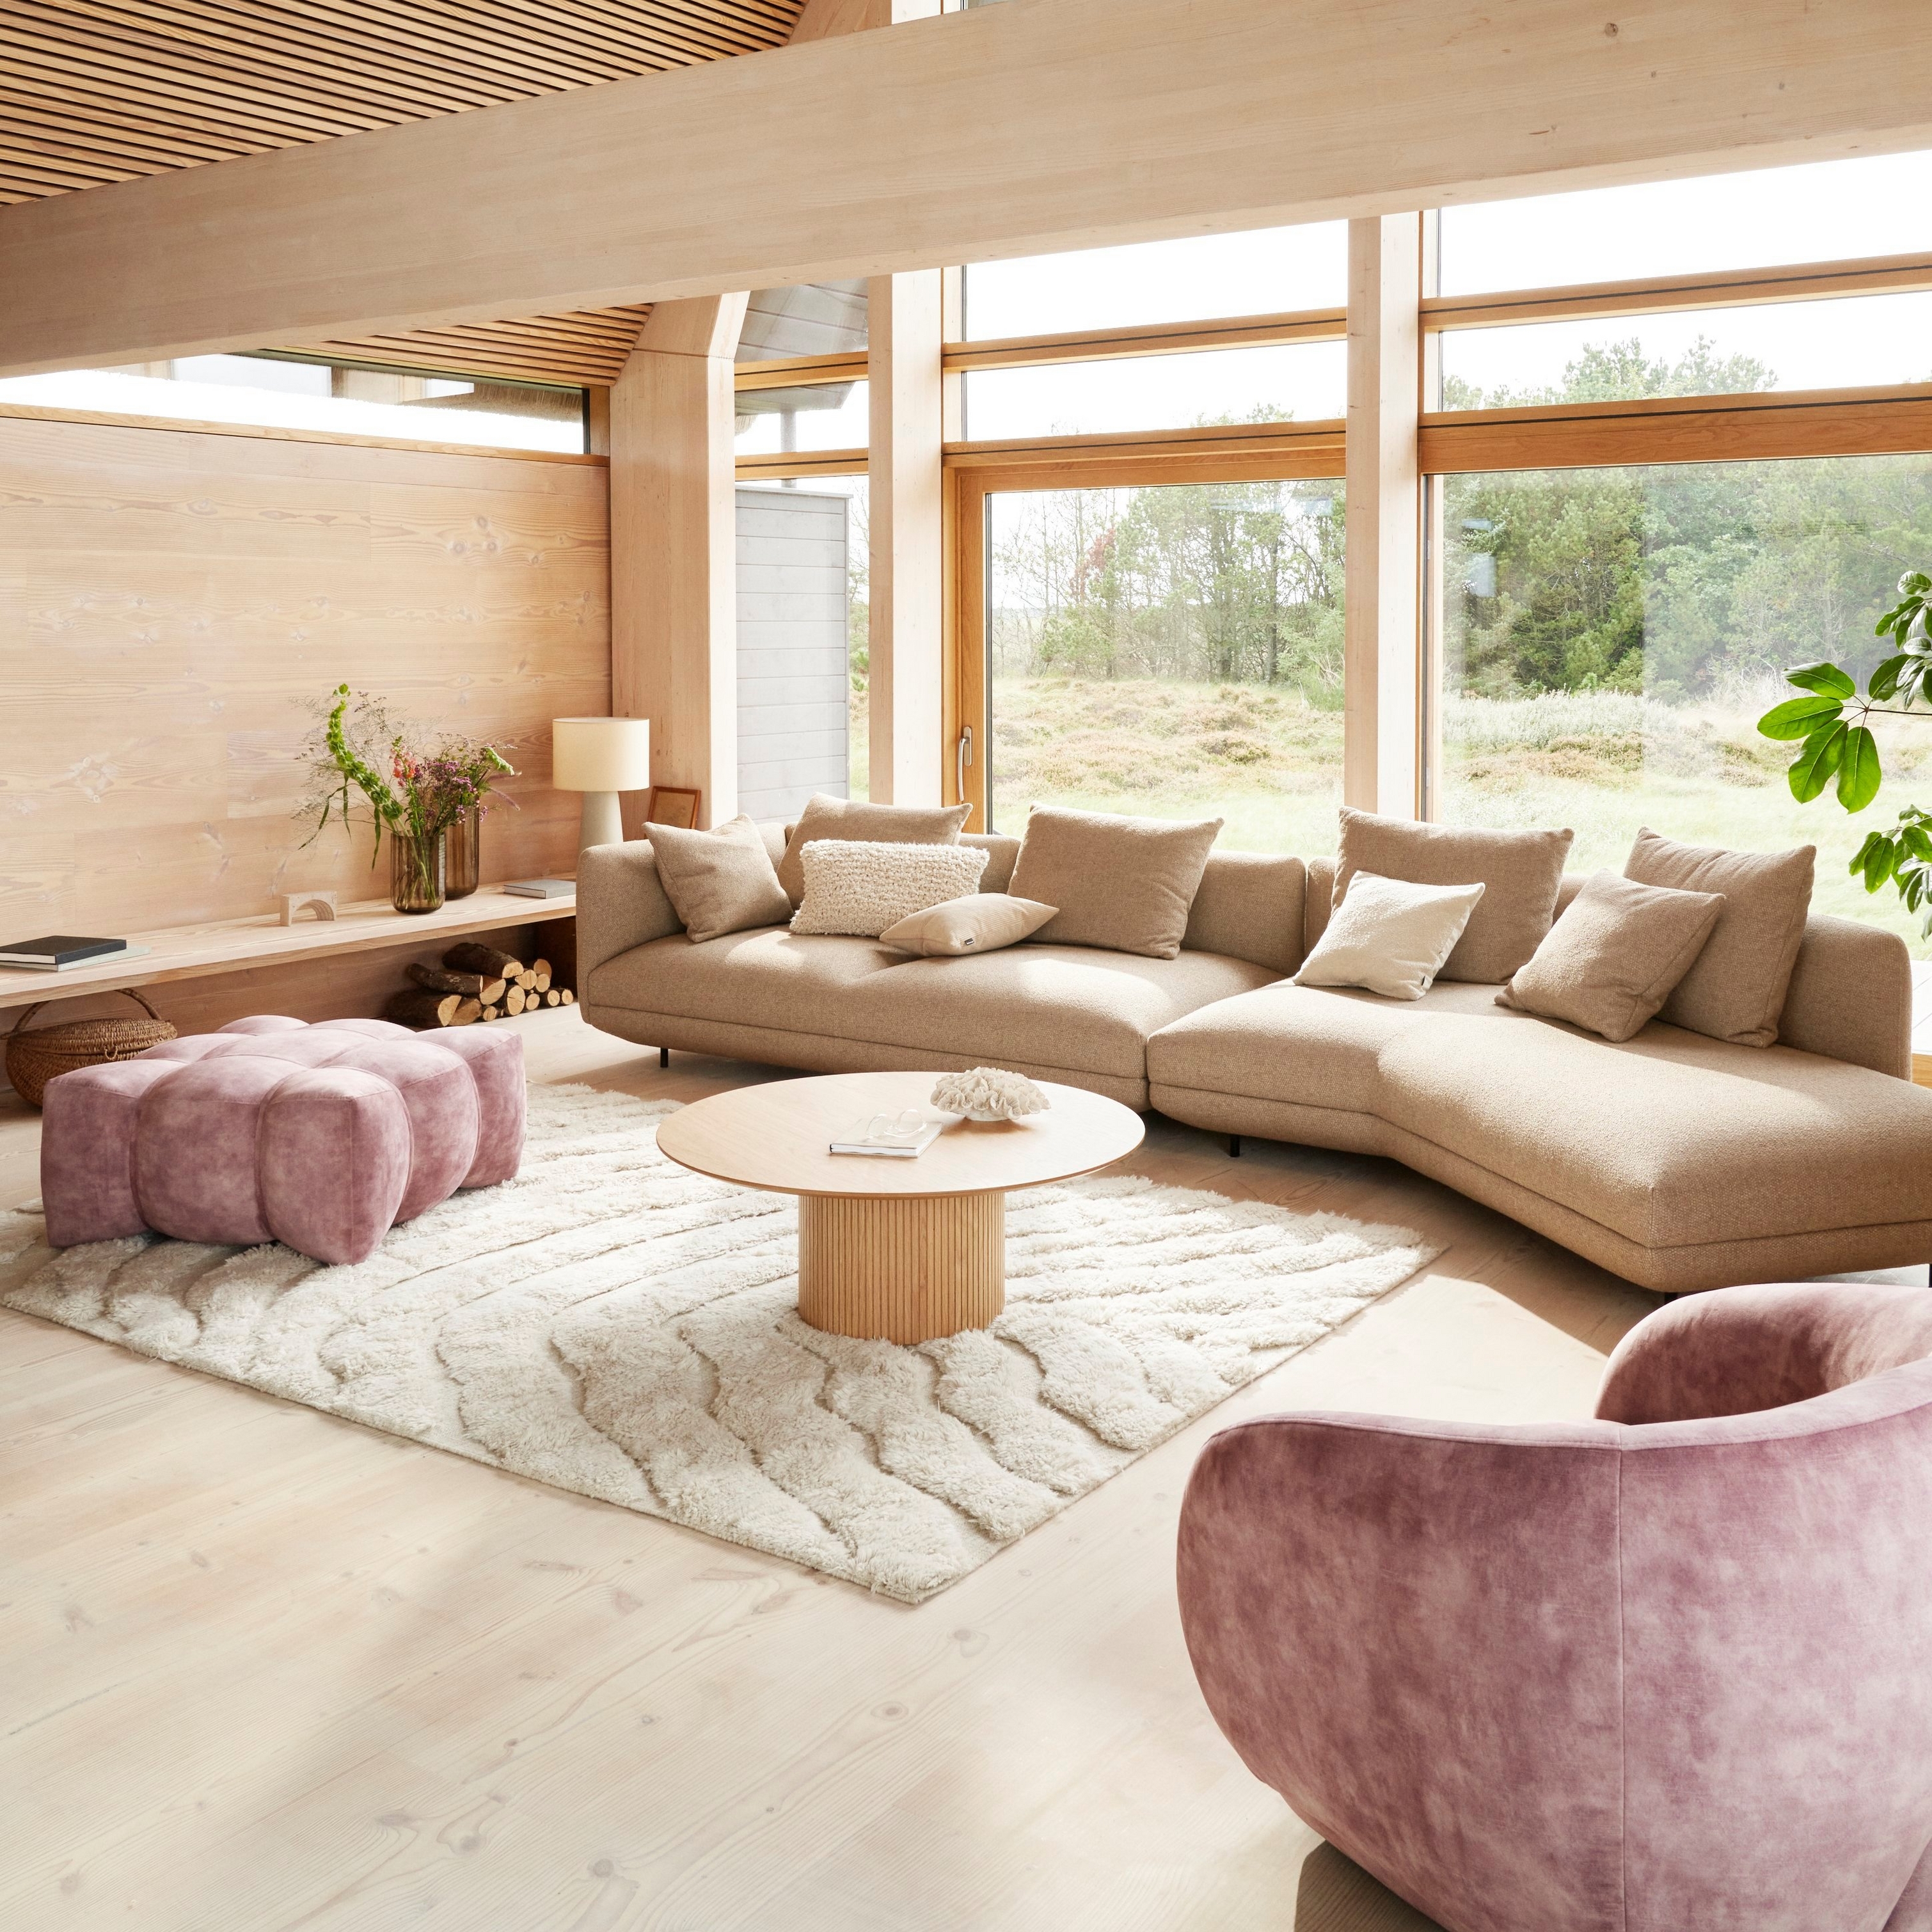 Útulný moderní obývací pokoj s pohovkou Salamanca čalouněnou látkou Lazio v hnědé barvě.